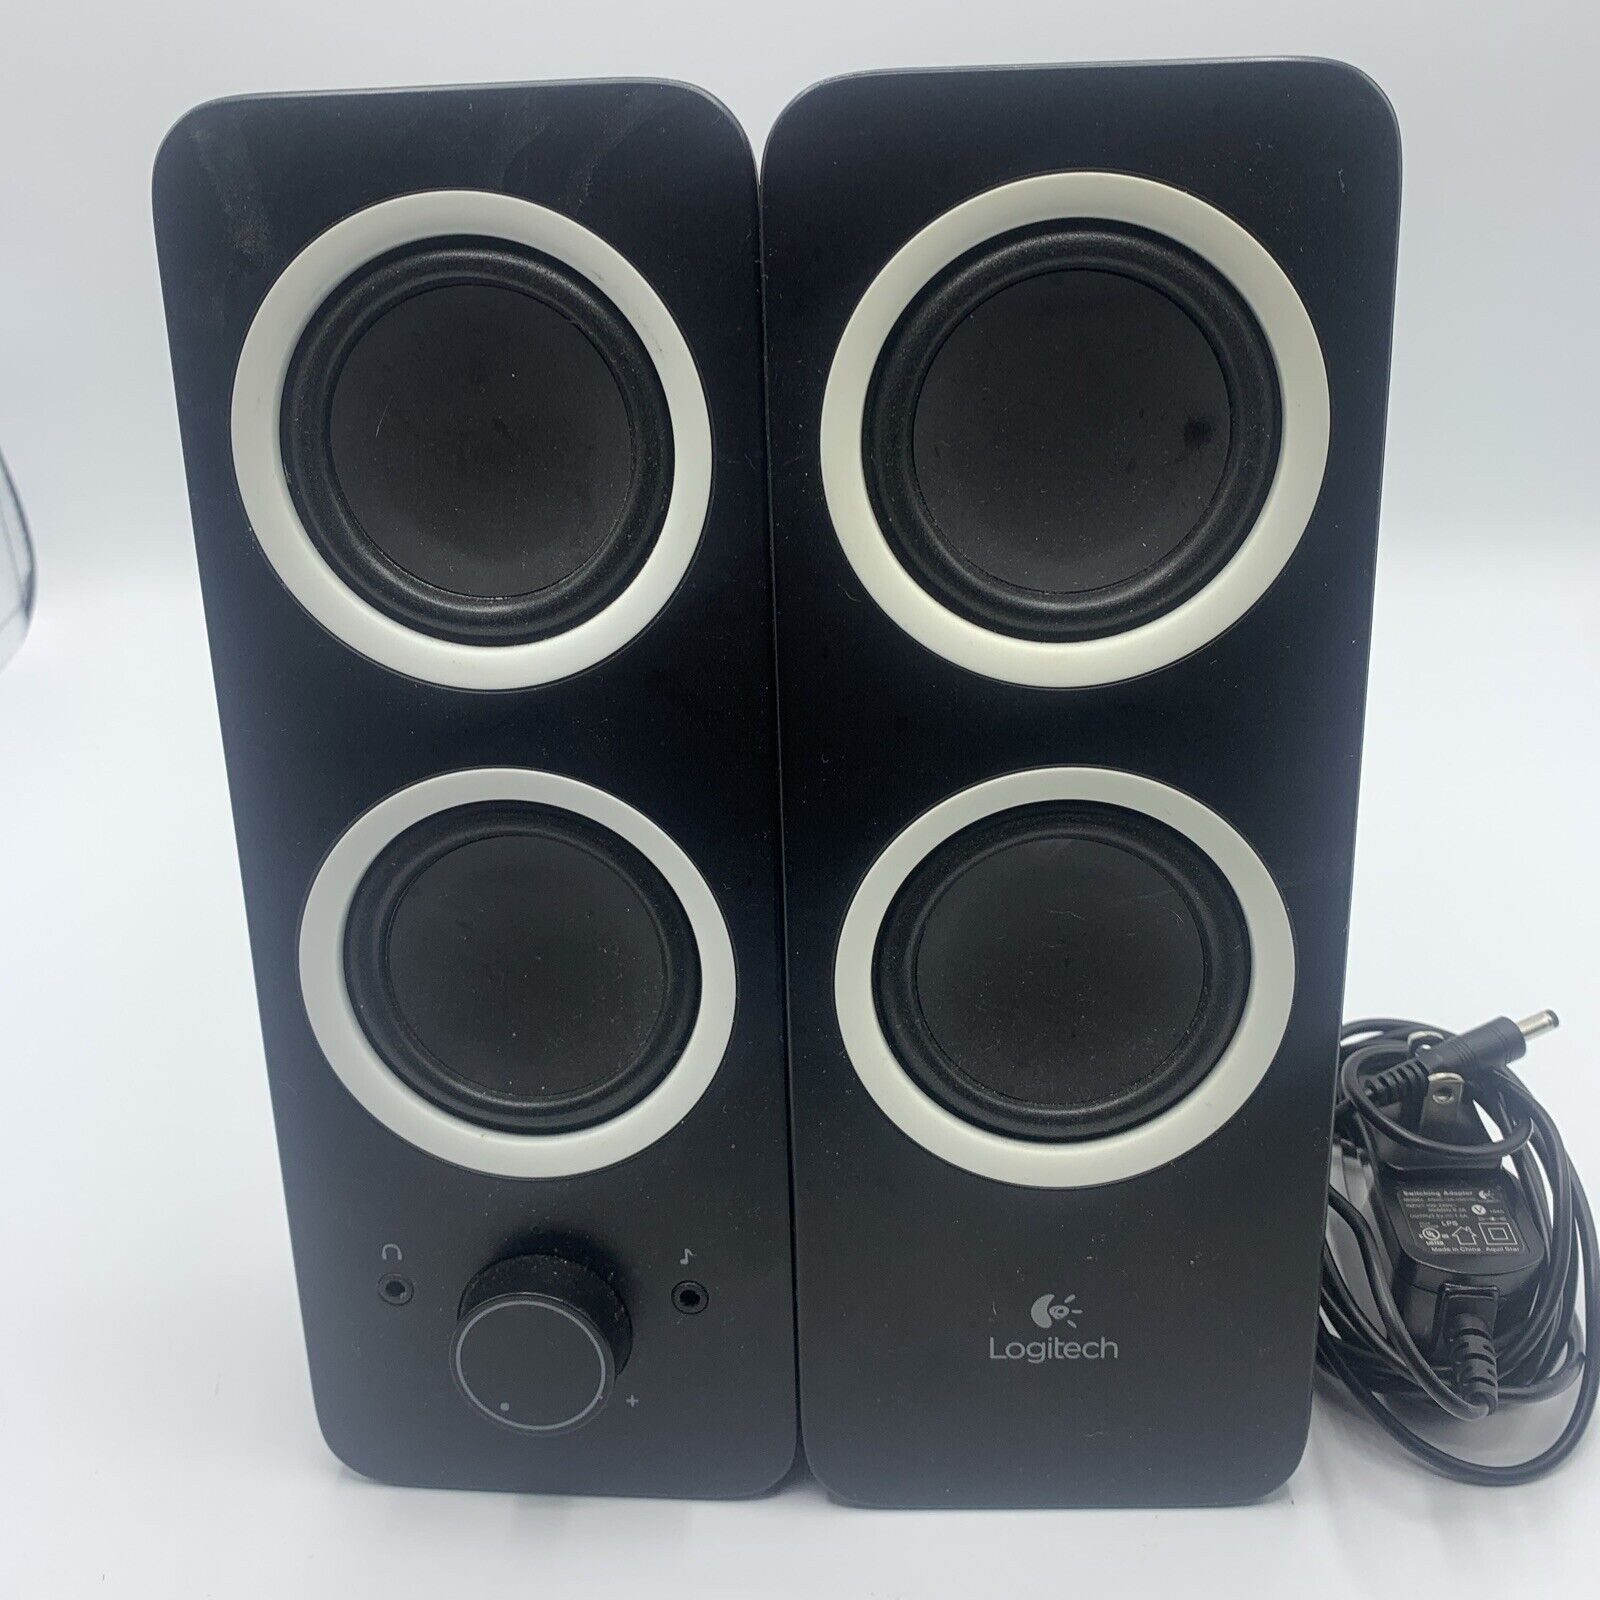 Logitech Z200 Stereo Multimedia Speakers Tested